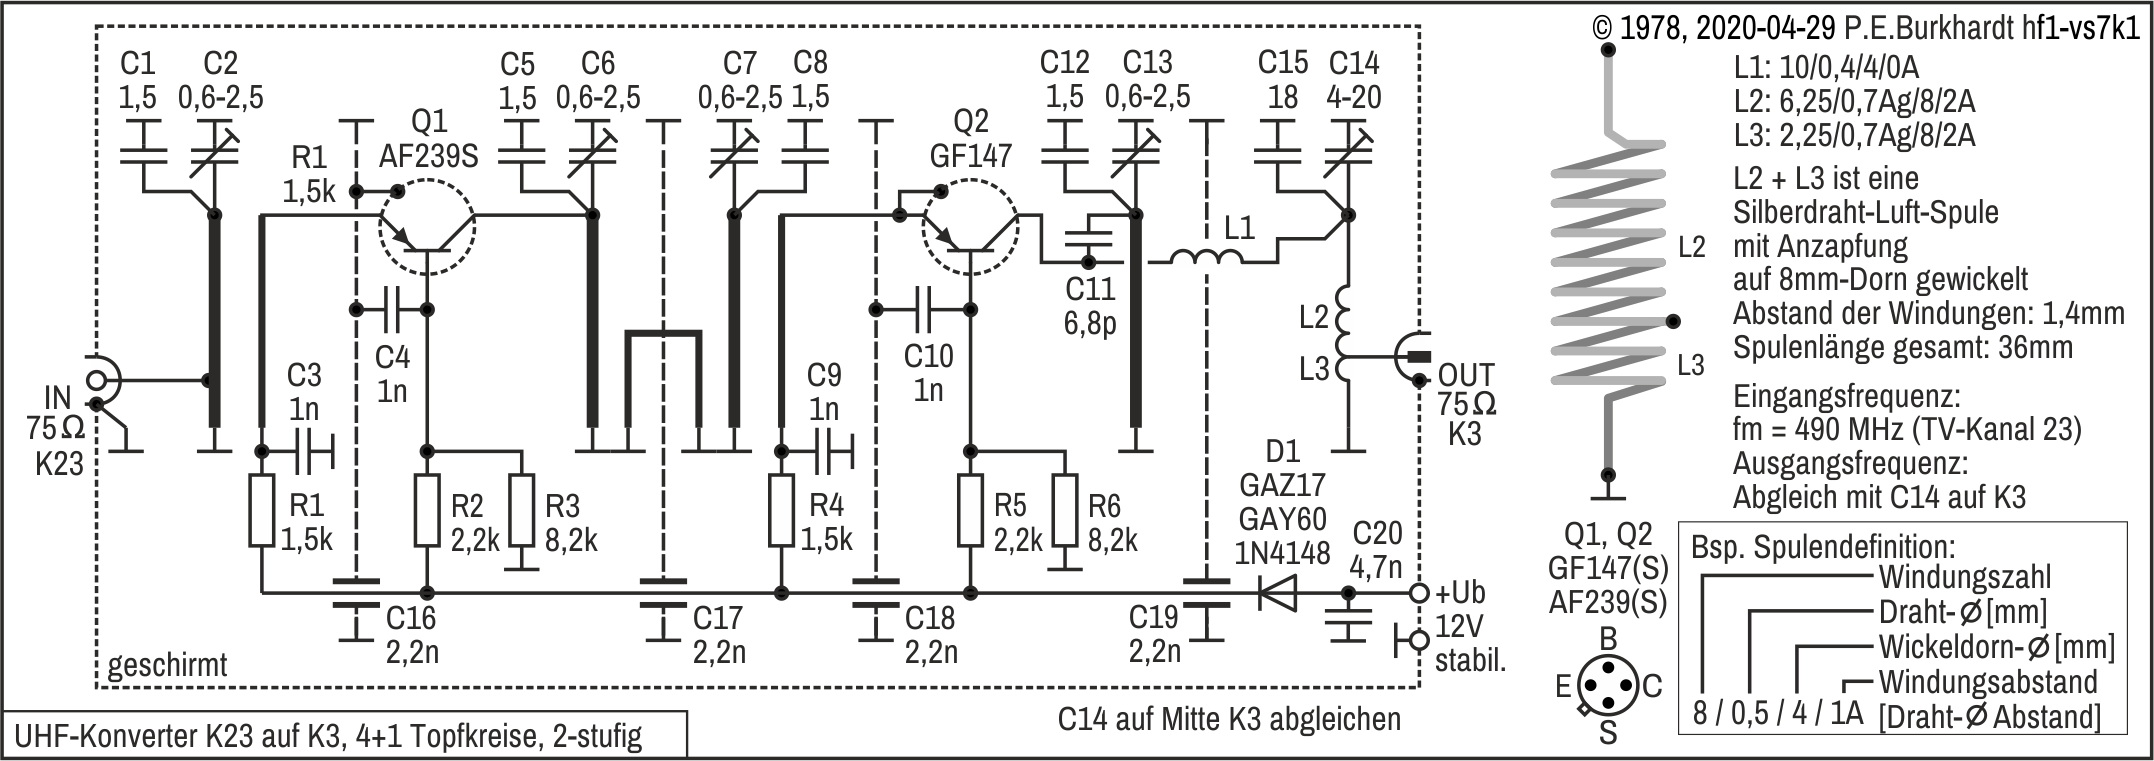 UHF-Konverter K23 auf K3